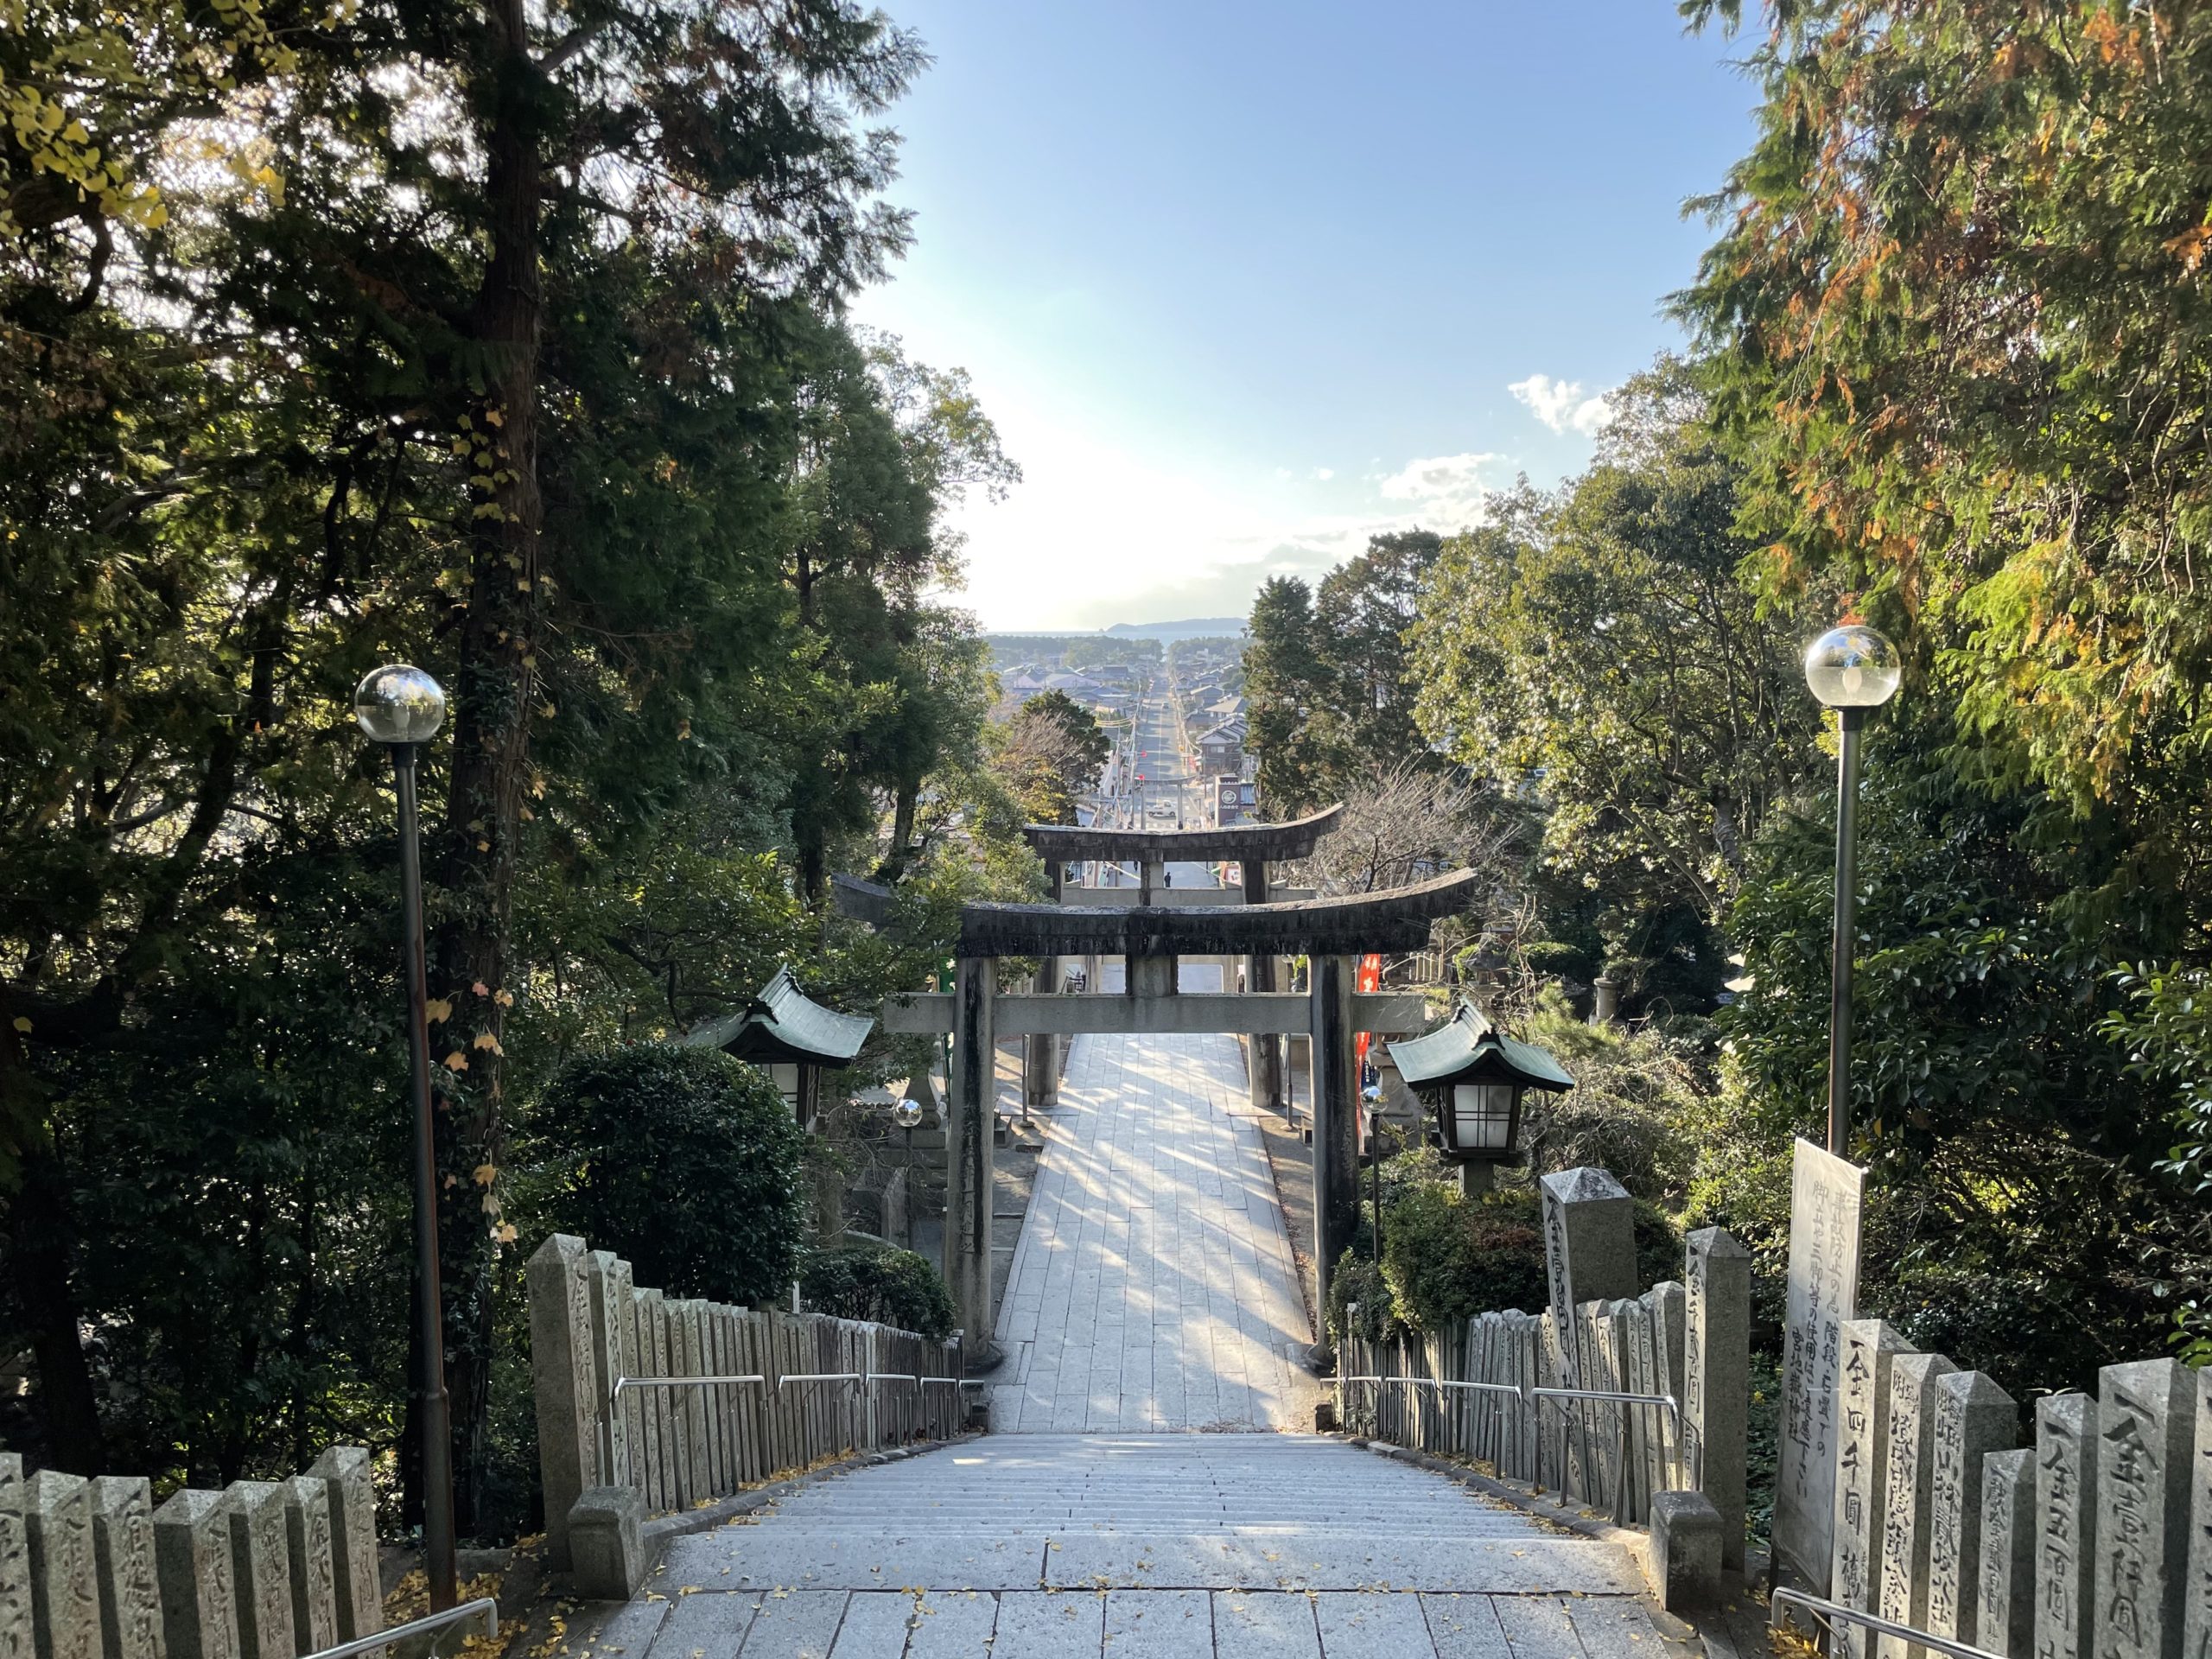 嵐のcmで有名 光の道の絶景が見える福岡の観光名所 宮地嶽神社に行ってきた 二拠点生活な暮らし